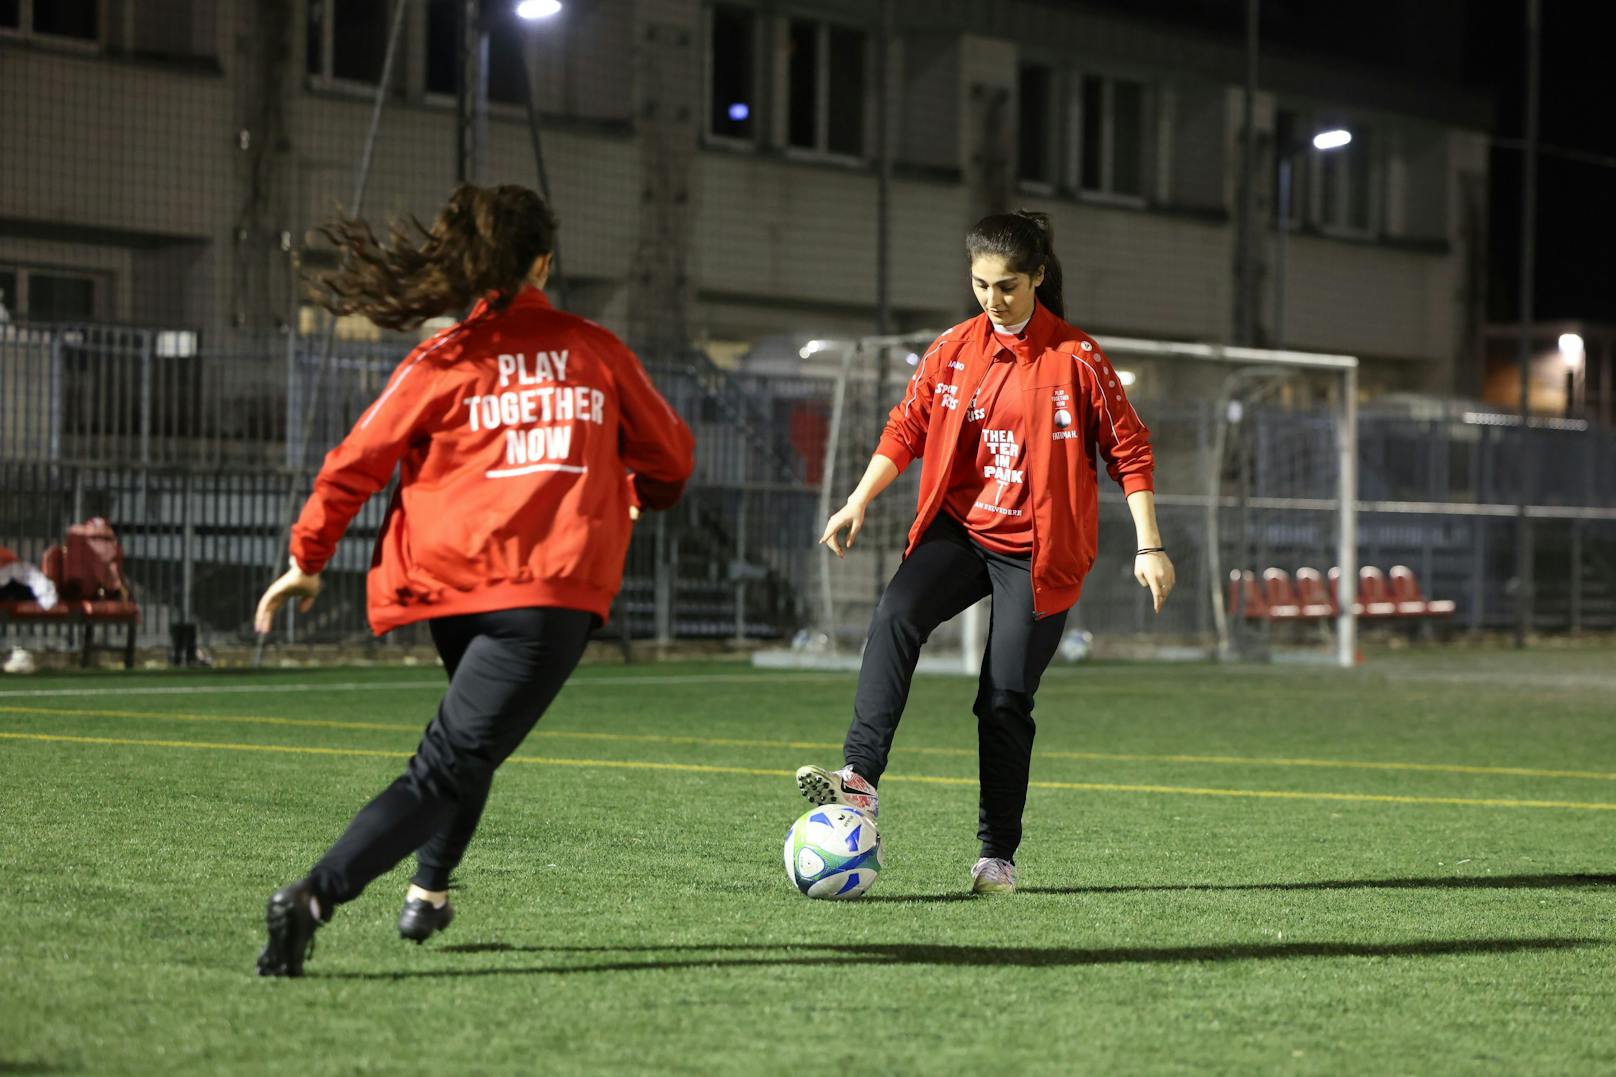 Der Traum der jungen Afghanin: Einmal Profifußballerin zu werden.